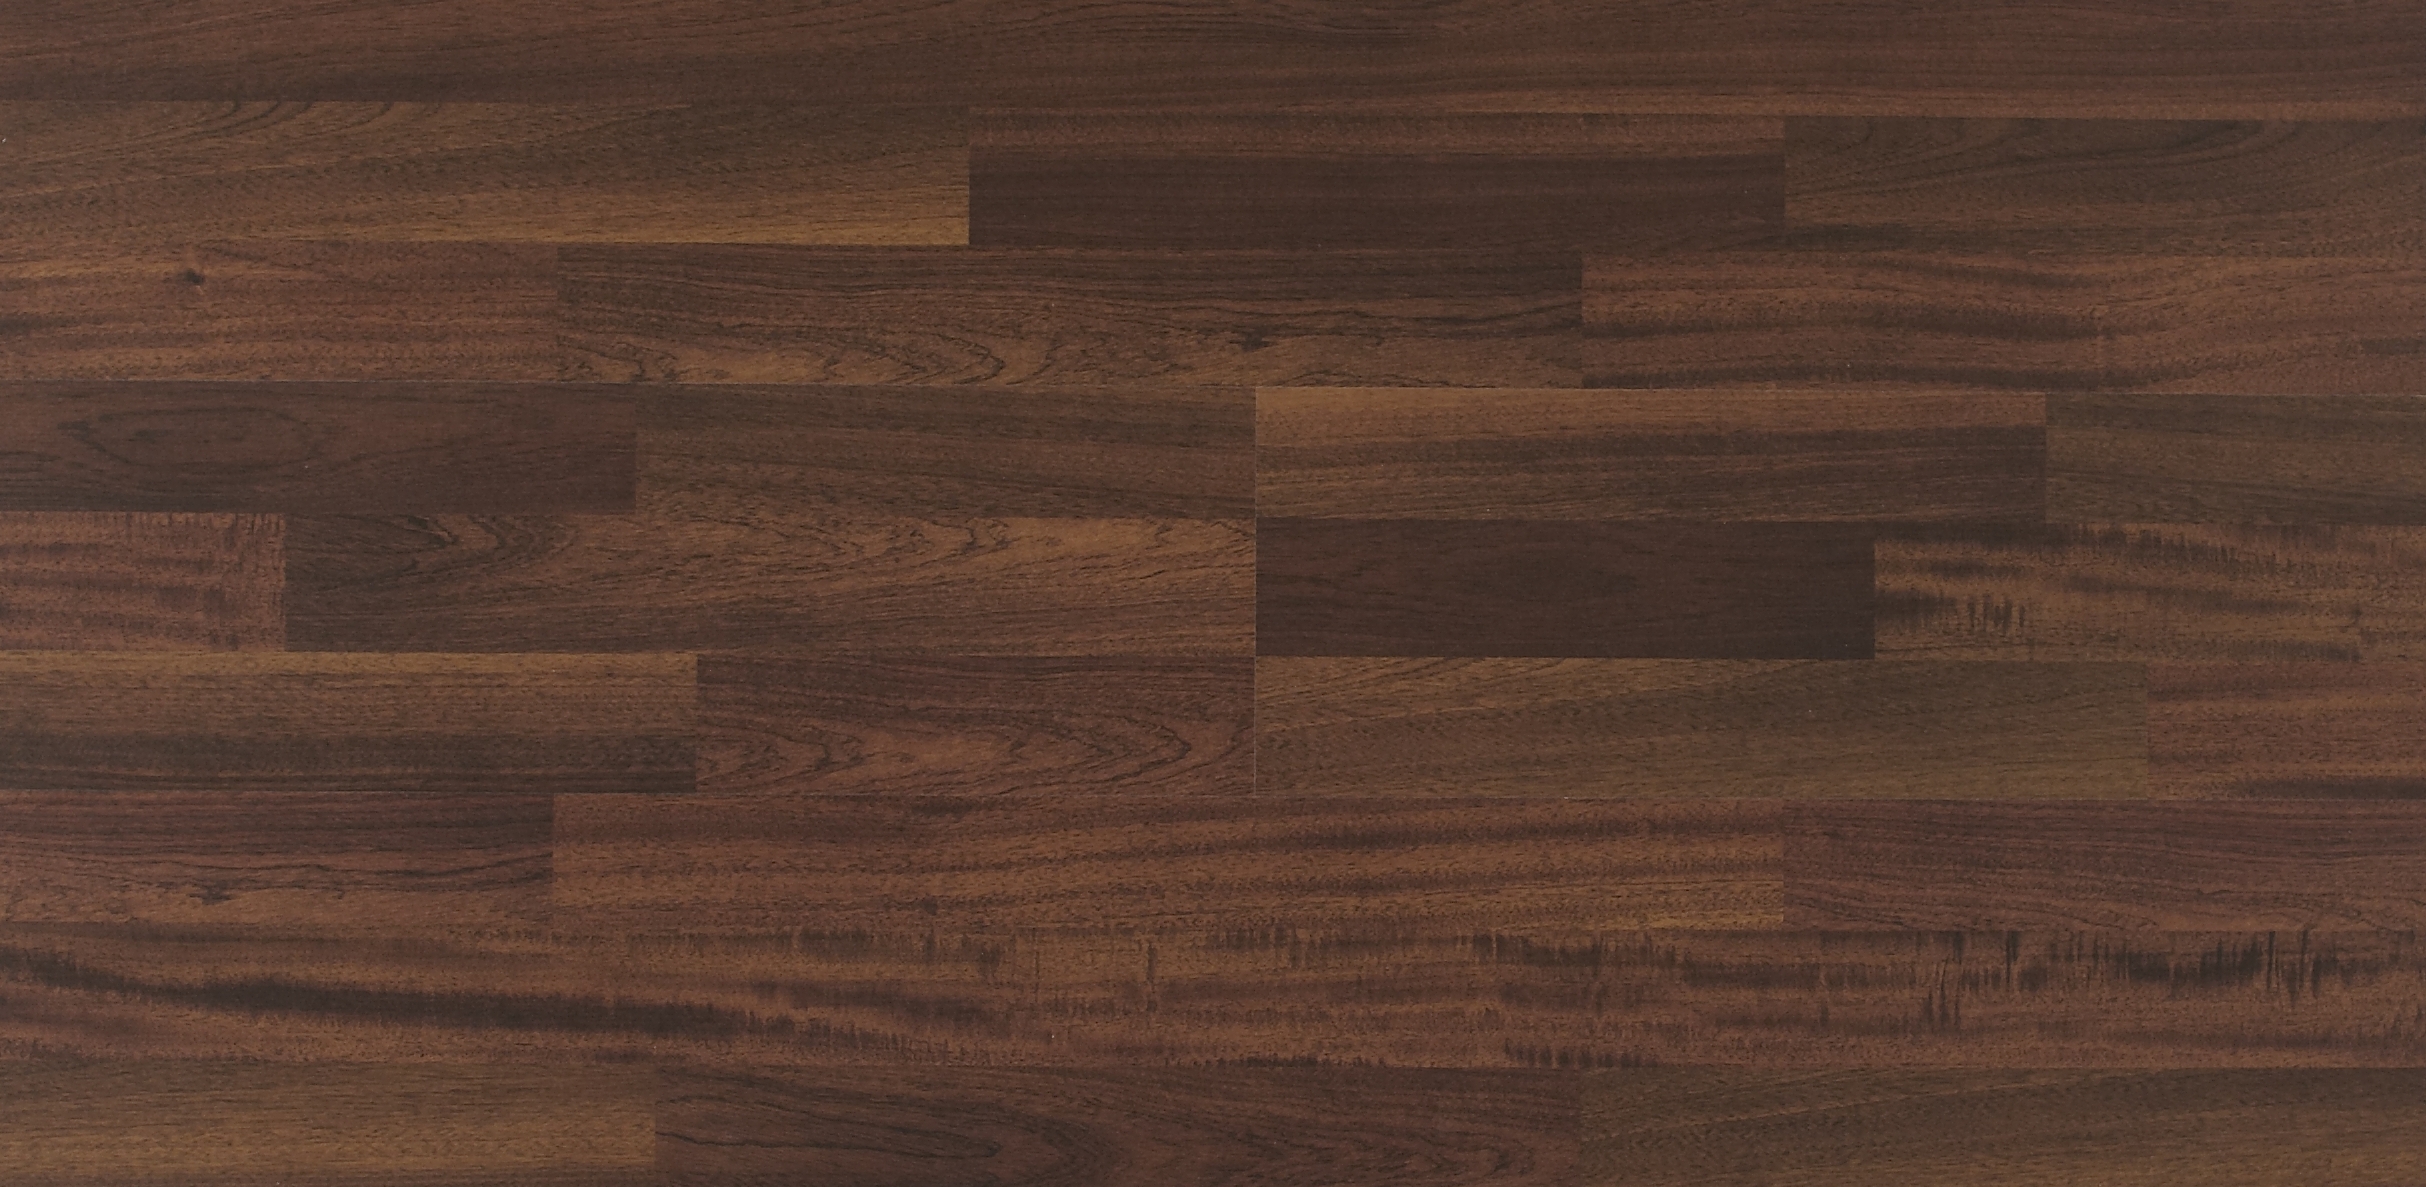 Nền gỗ - Nền gỗ là một lựa chọn thống nhất và phổ biến cho các phòng khách, phòng ngủ và văn phòng. Với đặc tính tự nhiên và ấm áp của gỗ, nền gỗ cũng tạo cảm giác thân thiện và thoải mái cho căn phòng. Xem hình ảnh liên quan để cảm nhận nét đẹp độc đáo của nền gỗ.